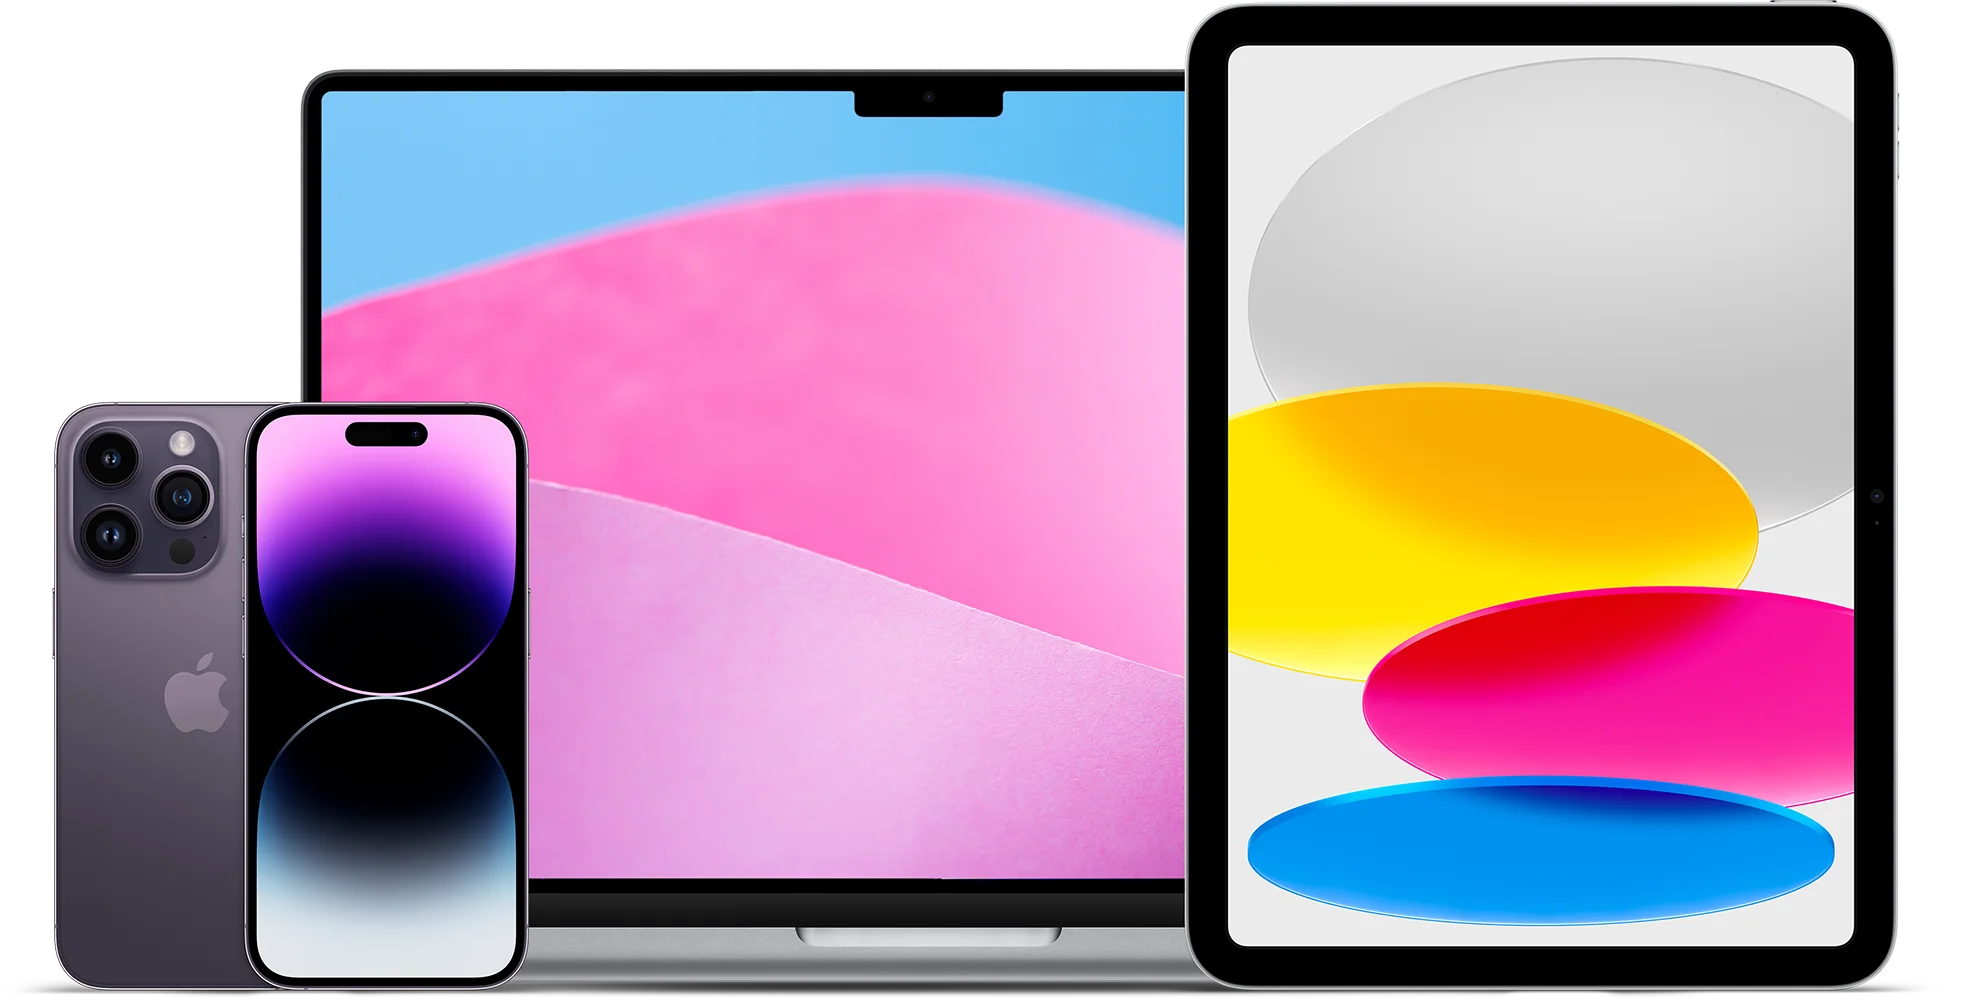 Rentalit Pro operativní leasing Apple iPhone iPad Macbook